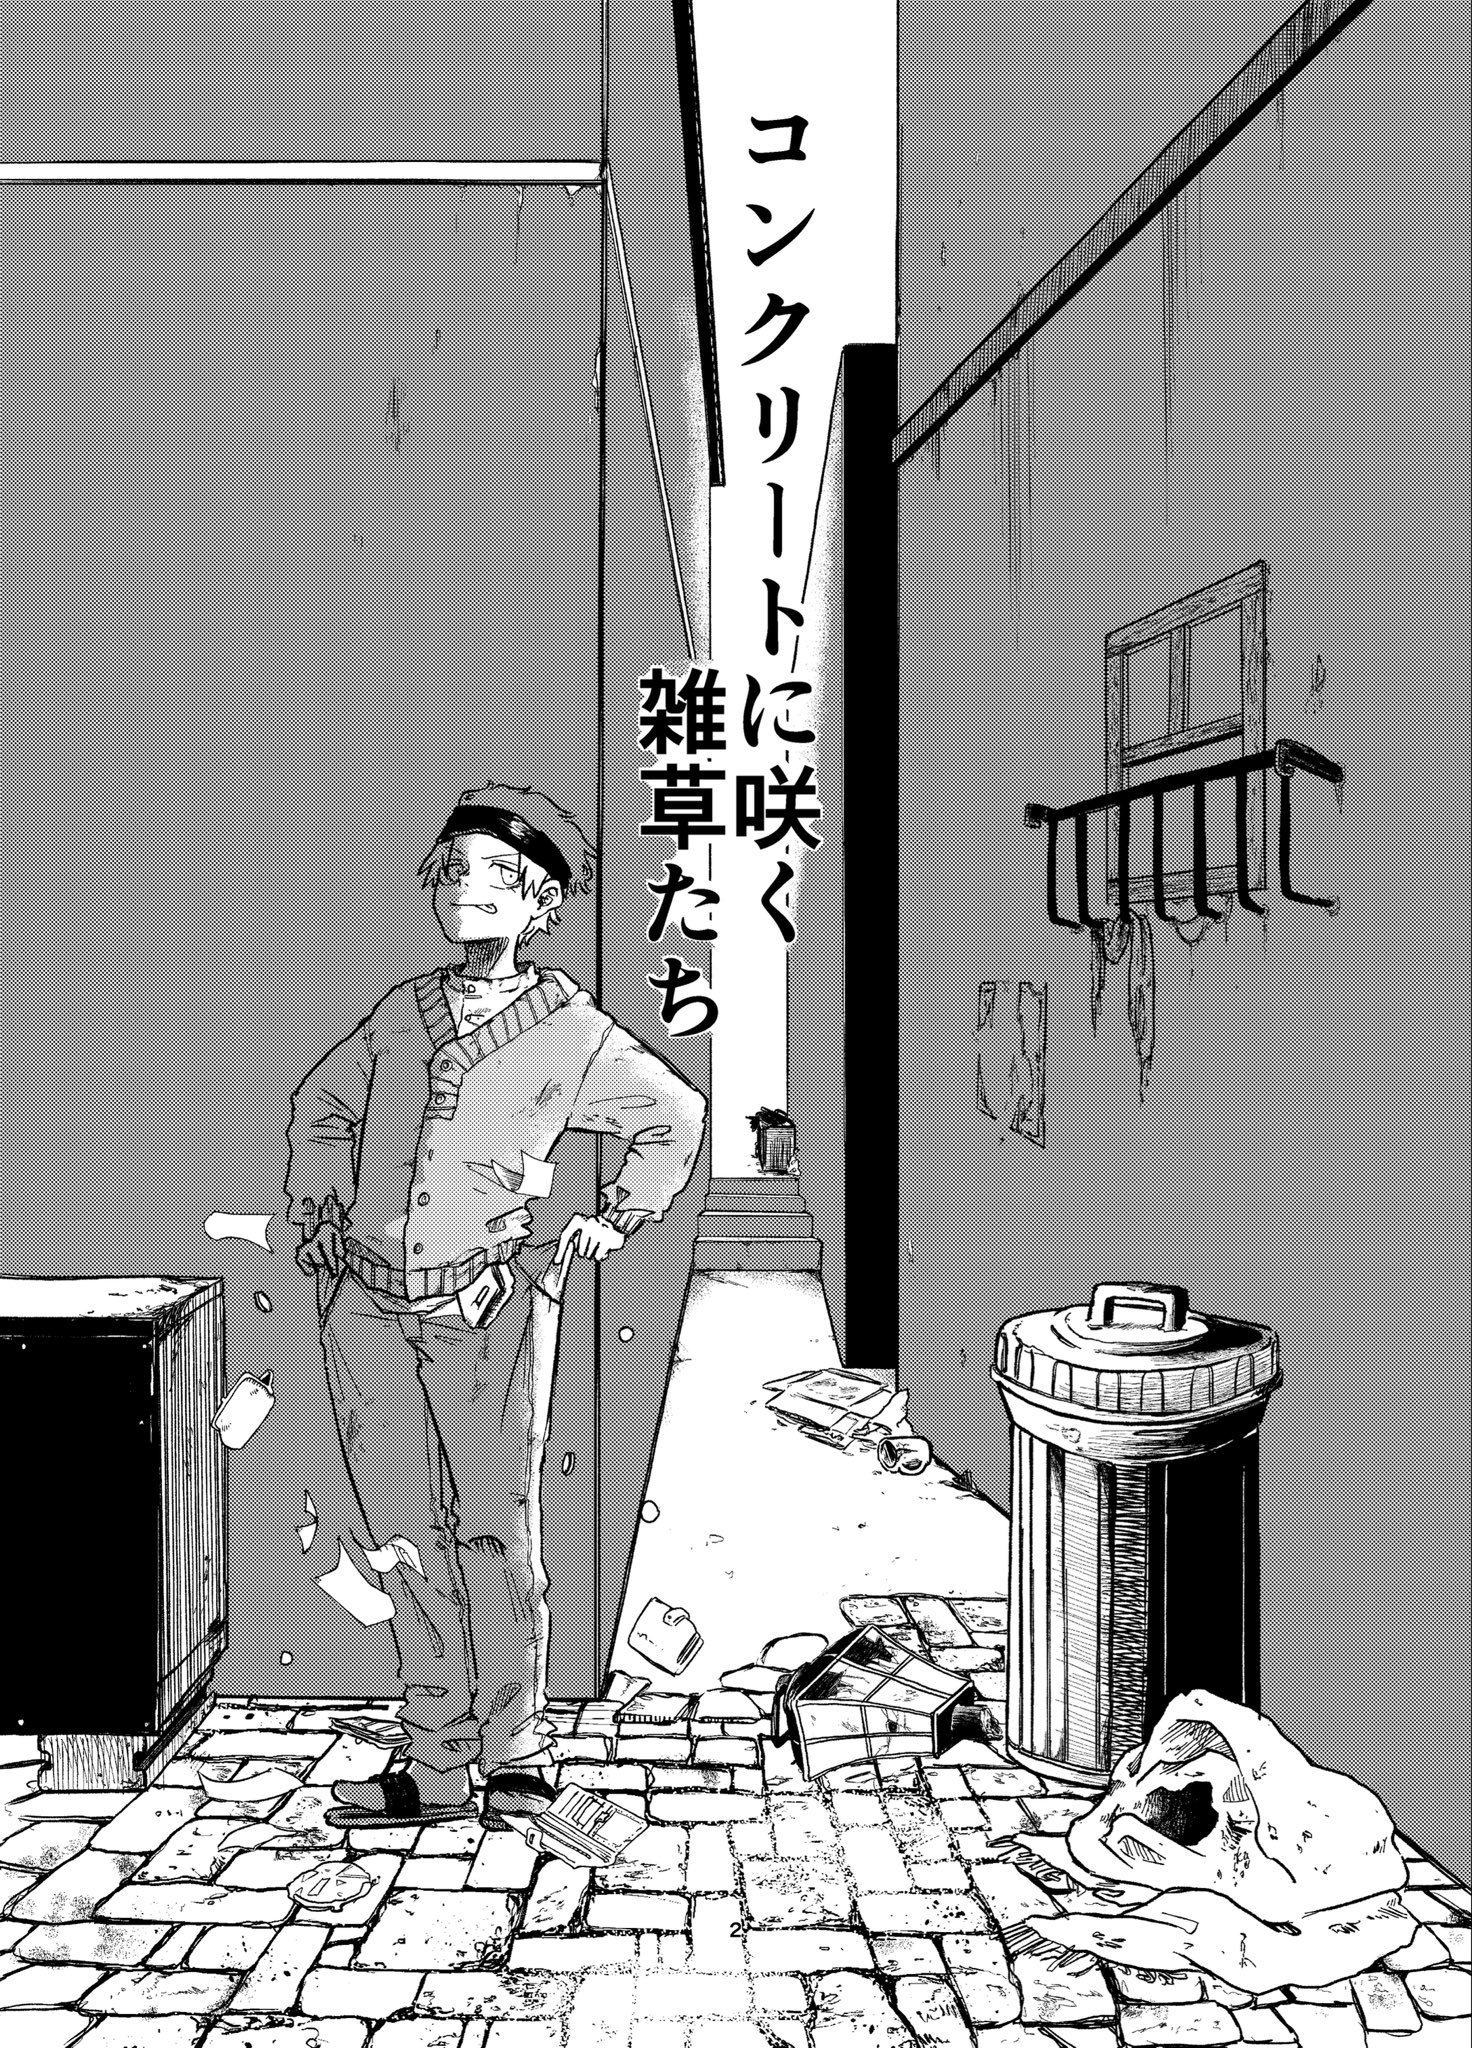 【漫画】『貧乏人がドッペルゲンガーに翻弄される話』の画像